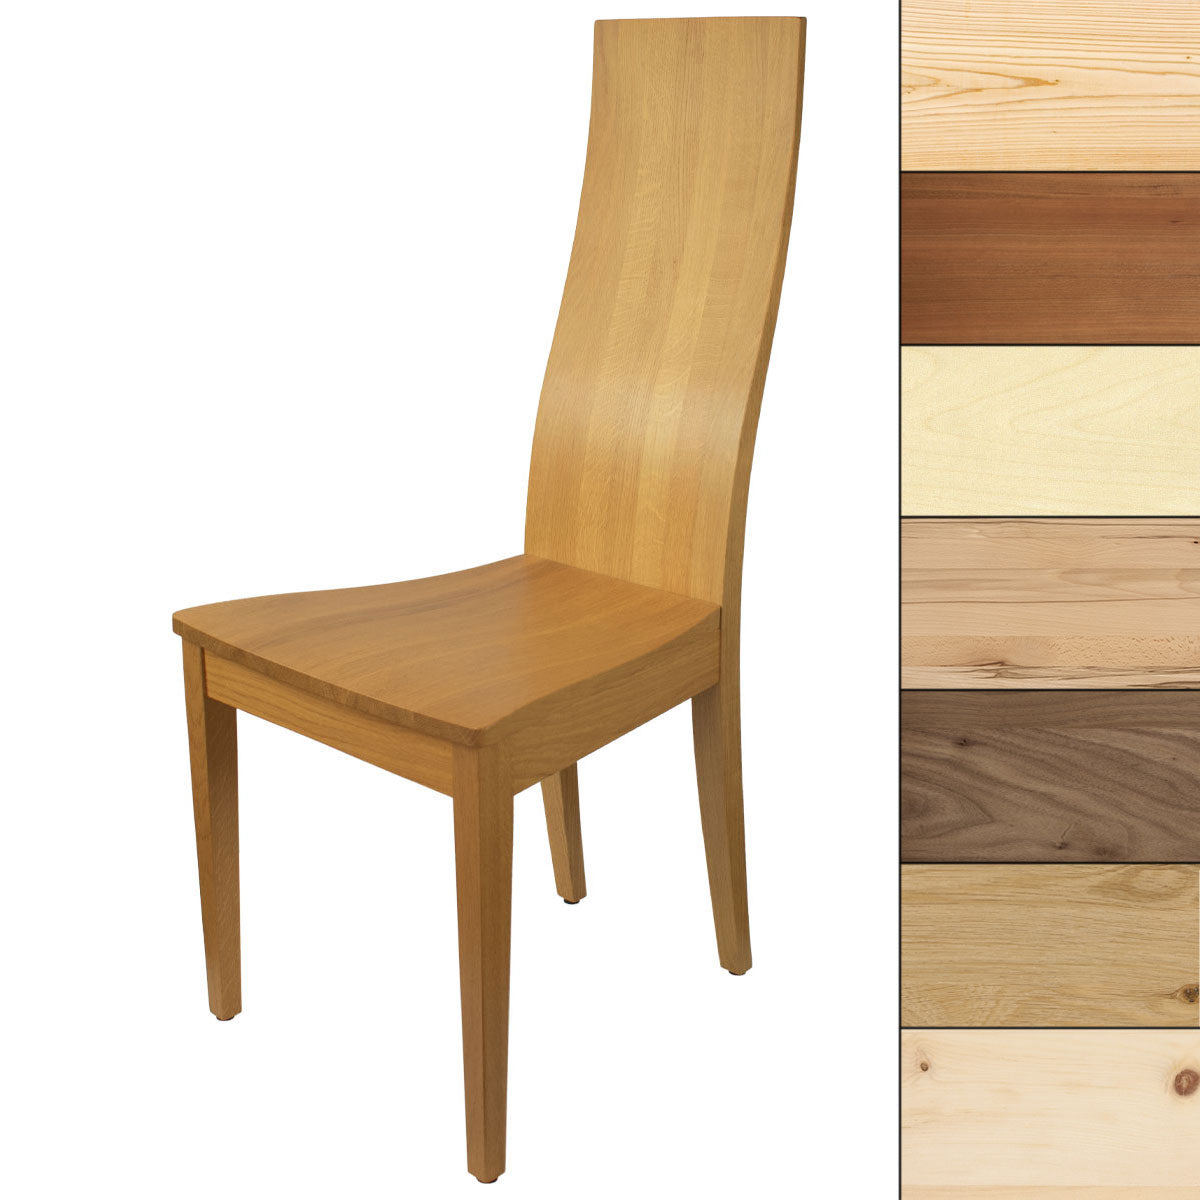 Eleganter Stuhl  - 'Sitwell Fine' in verschiedenen Holzarten - Massives Designhandwerk